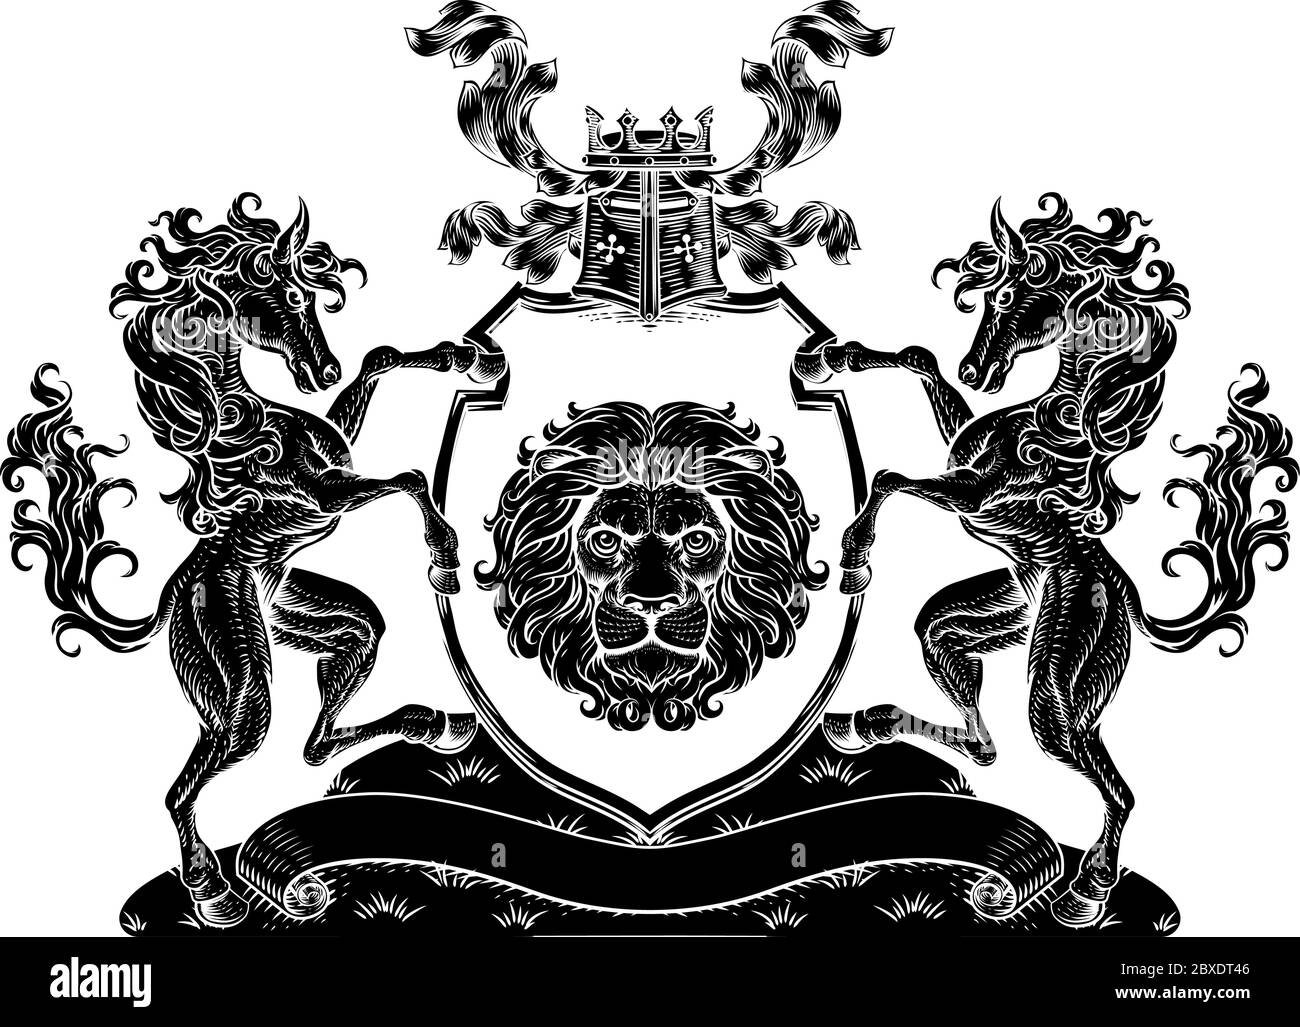 Armoiries Crest Horse Lion Family Shield Seal Illustration de Vecteur